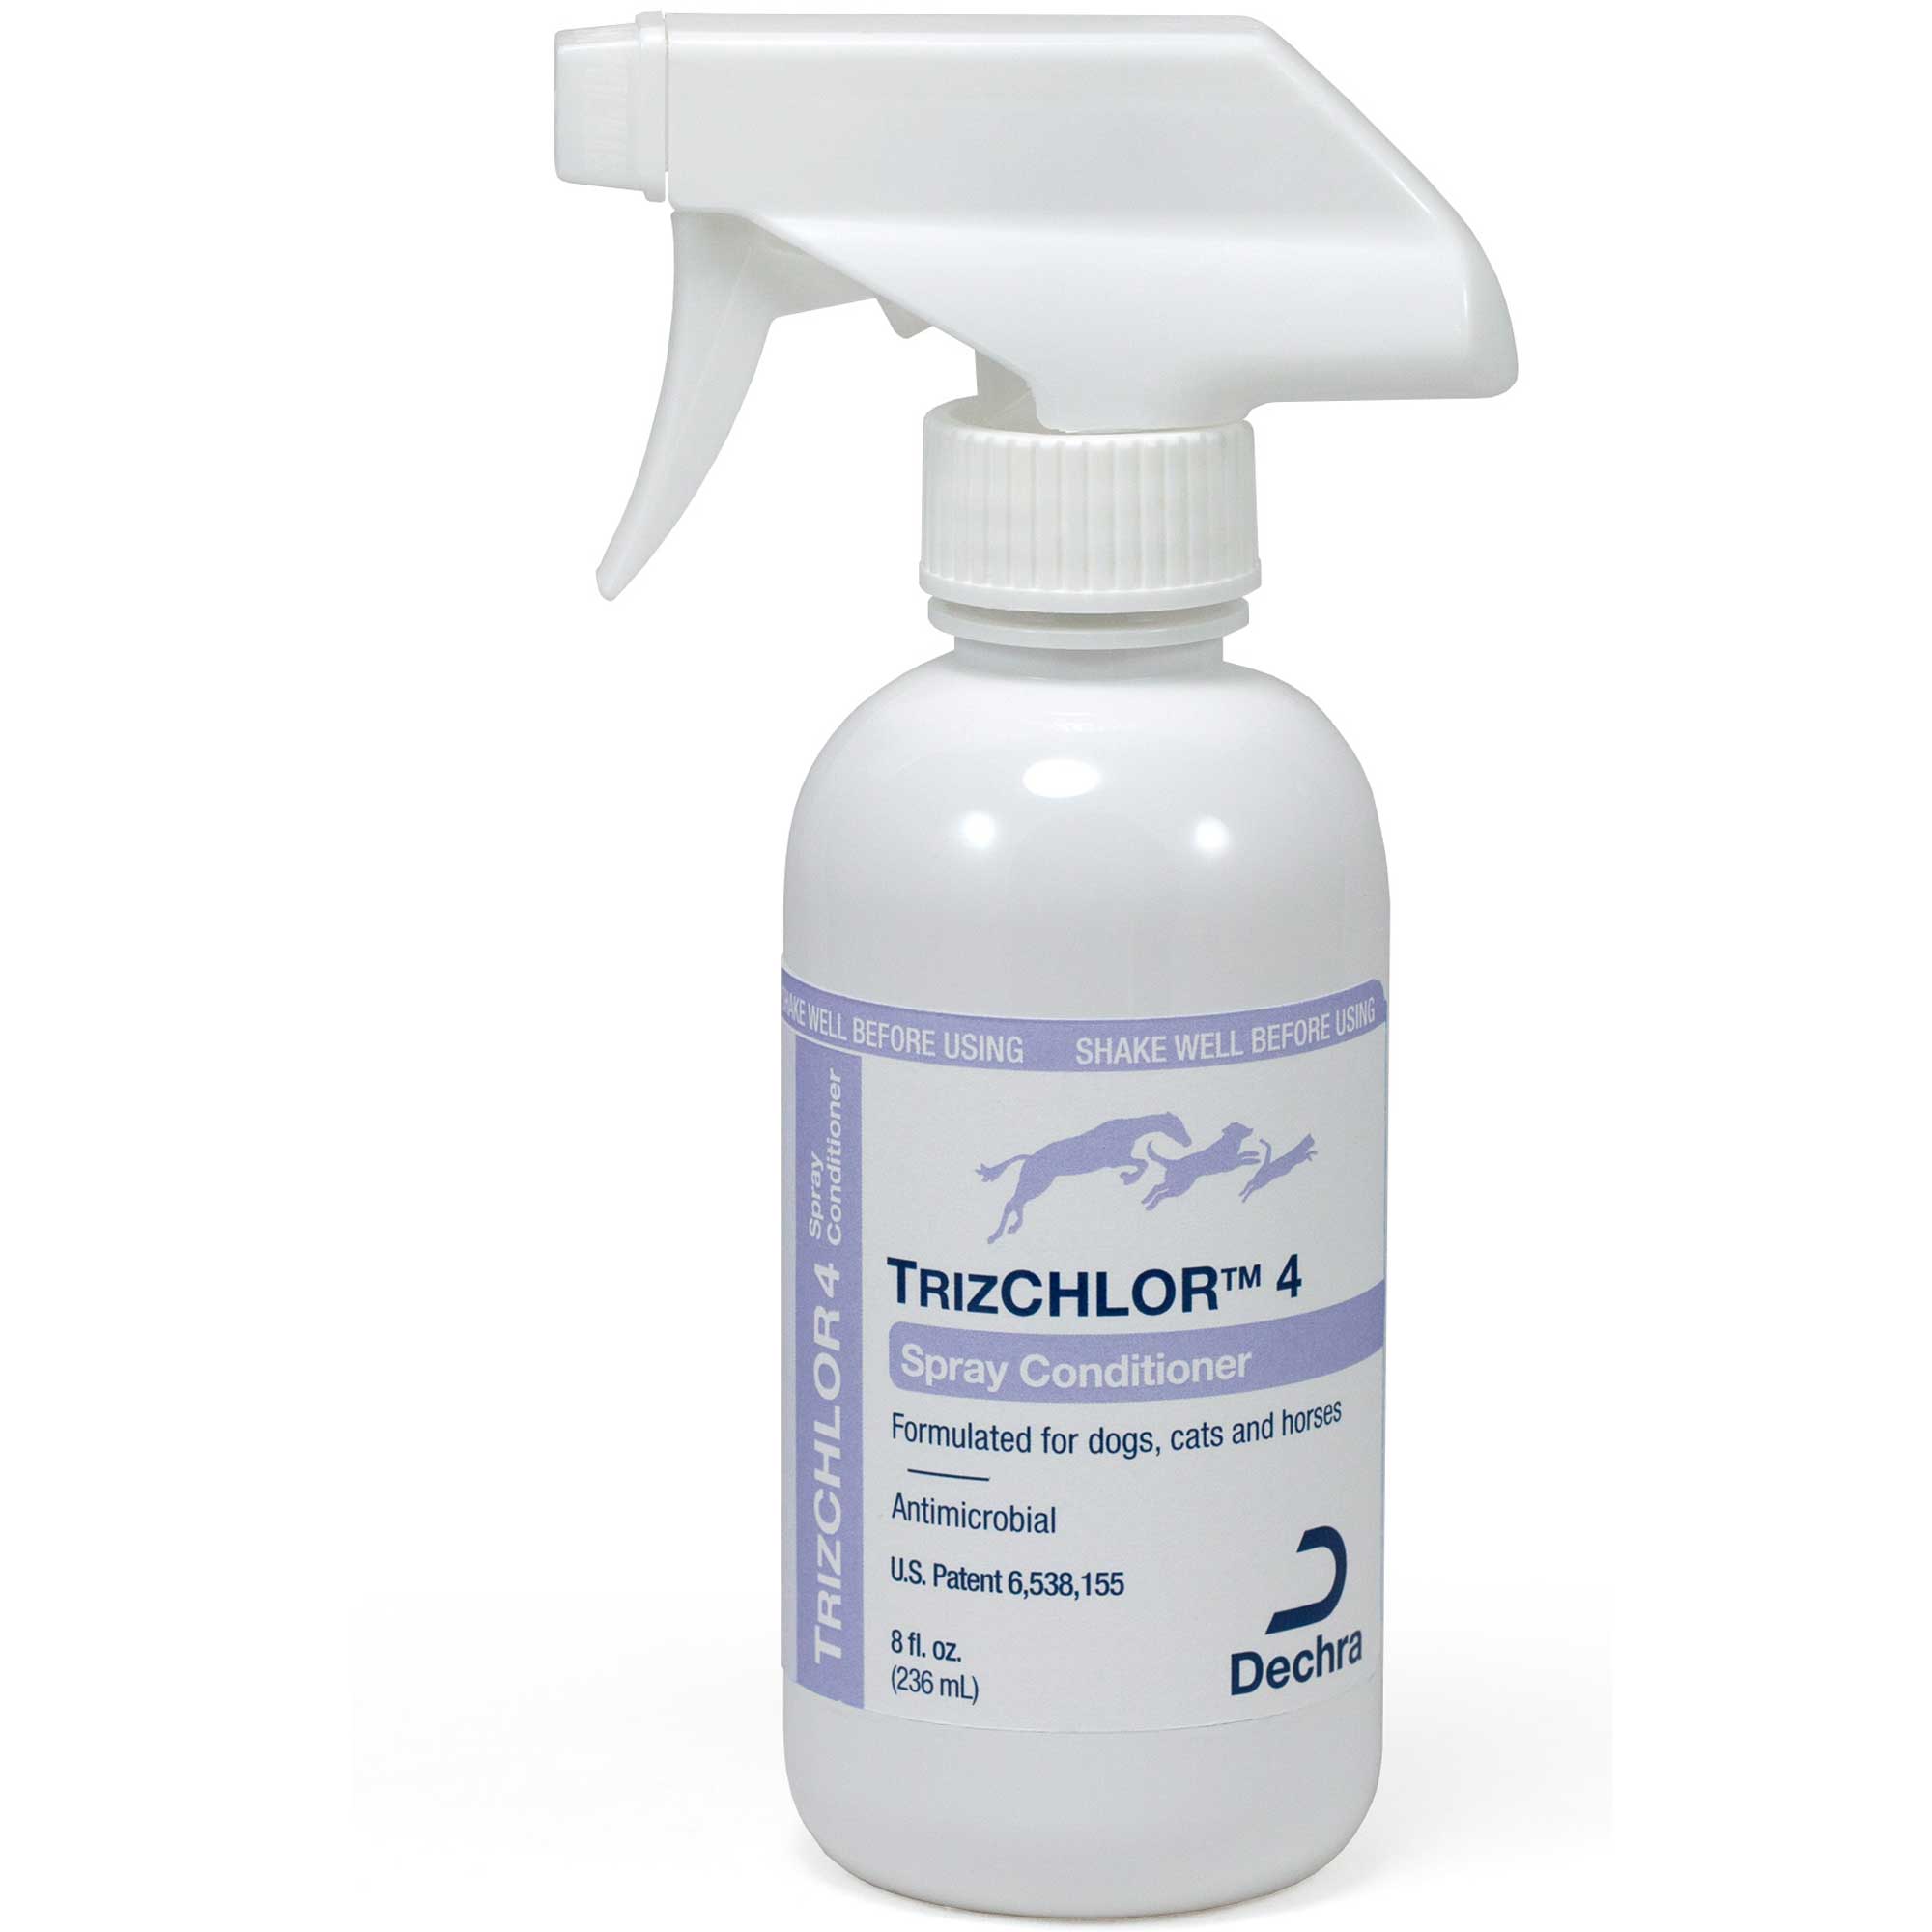 TrizCHLOR 4 Spray Conditioner Usage